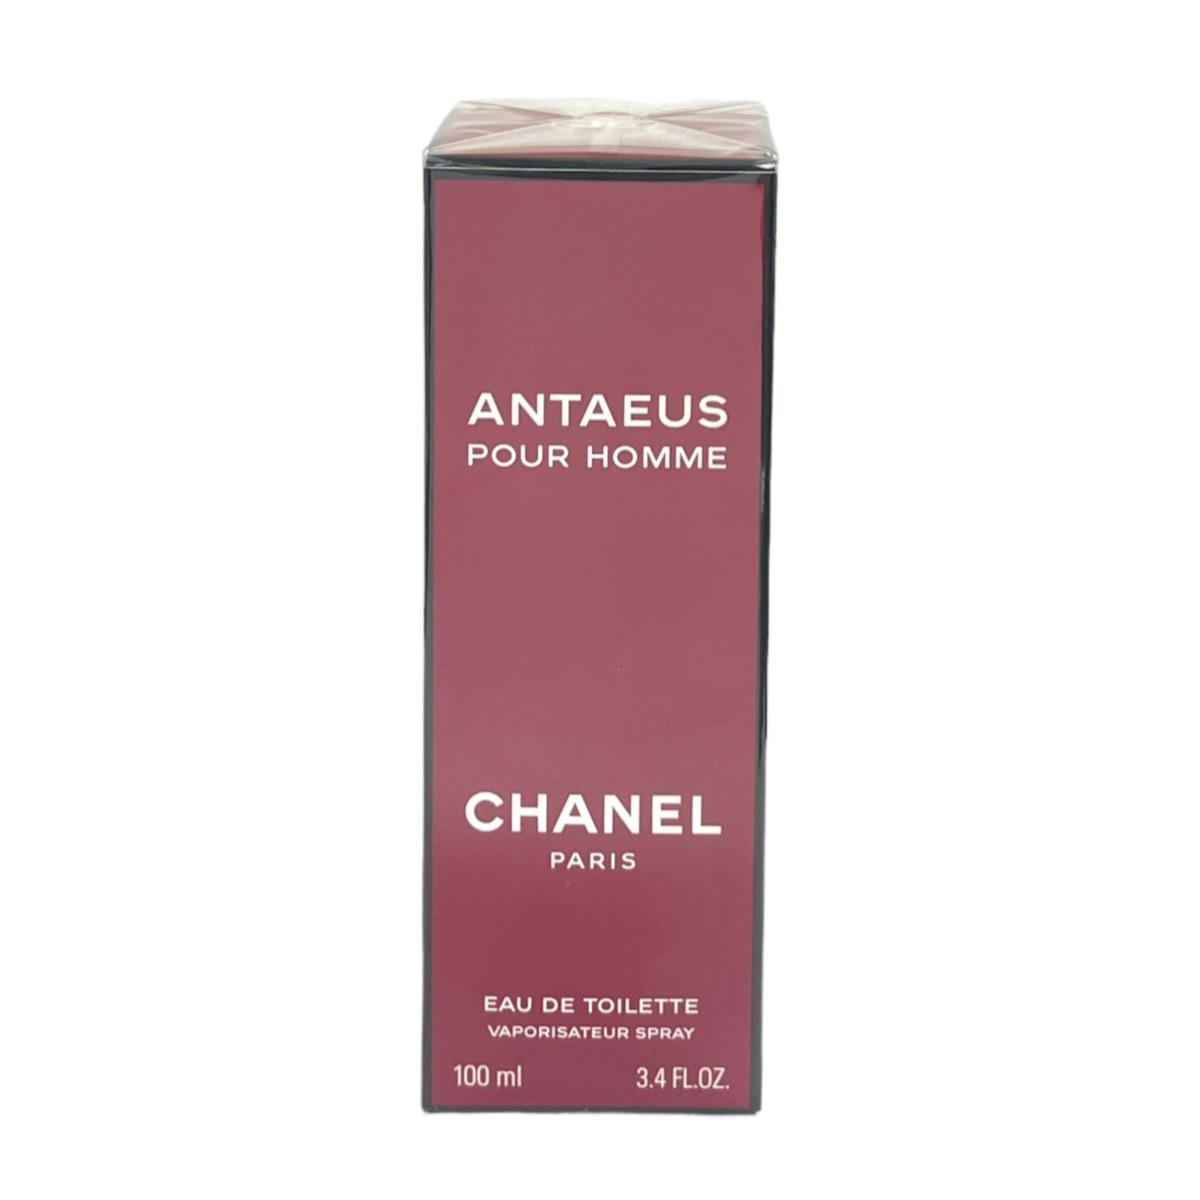 Chanel Antaeus Homme Eau De Toilette 100ml/3.4fl As Seen In Pictures